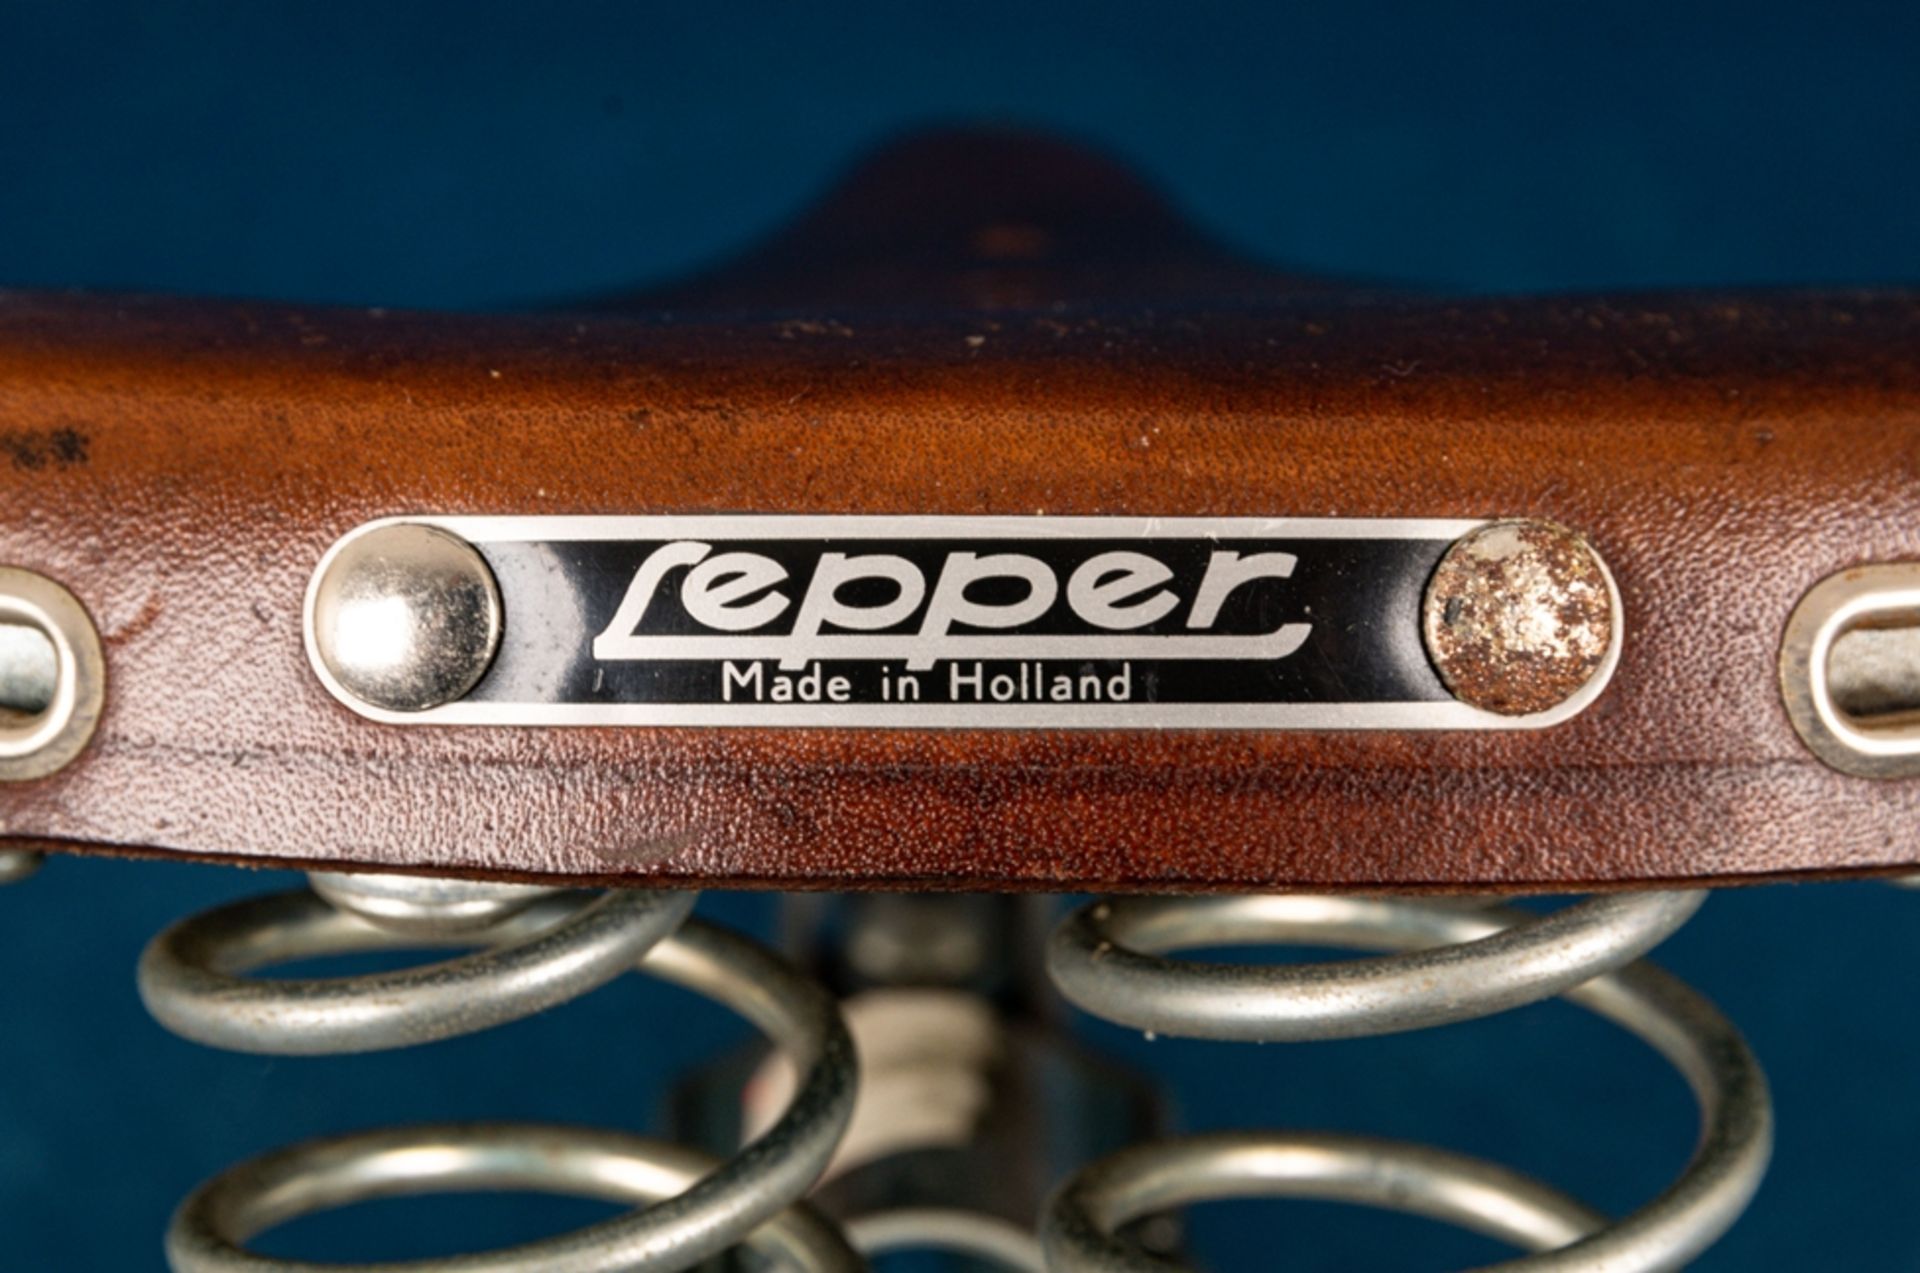 "Lepper" - Fahrradsattel, braunes Sattelleder, guter Erhalt, Länge ca. 25 cm. - Image 7 of 12